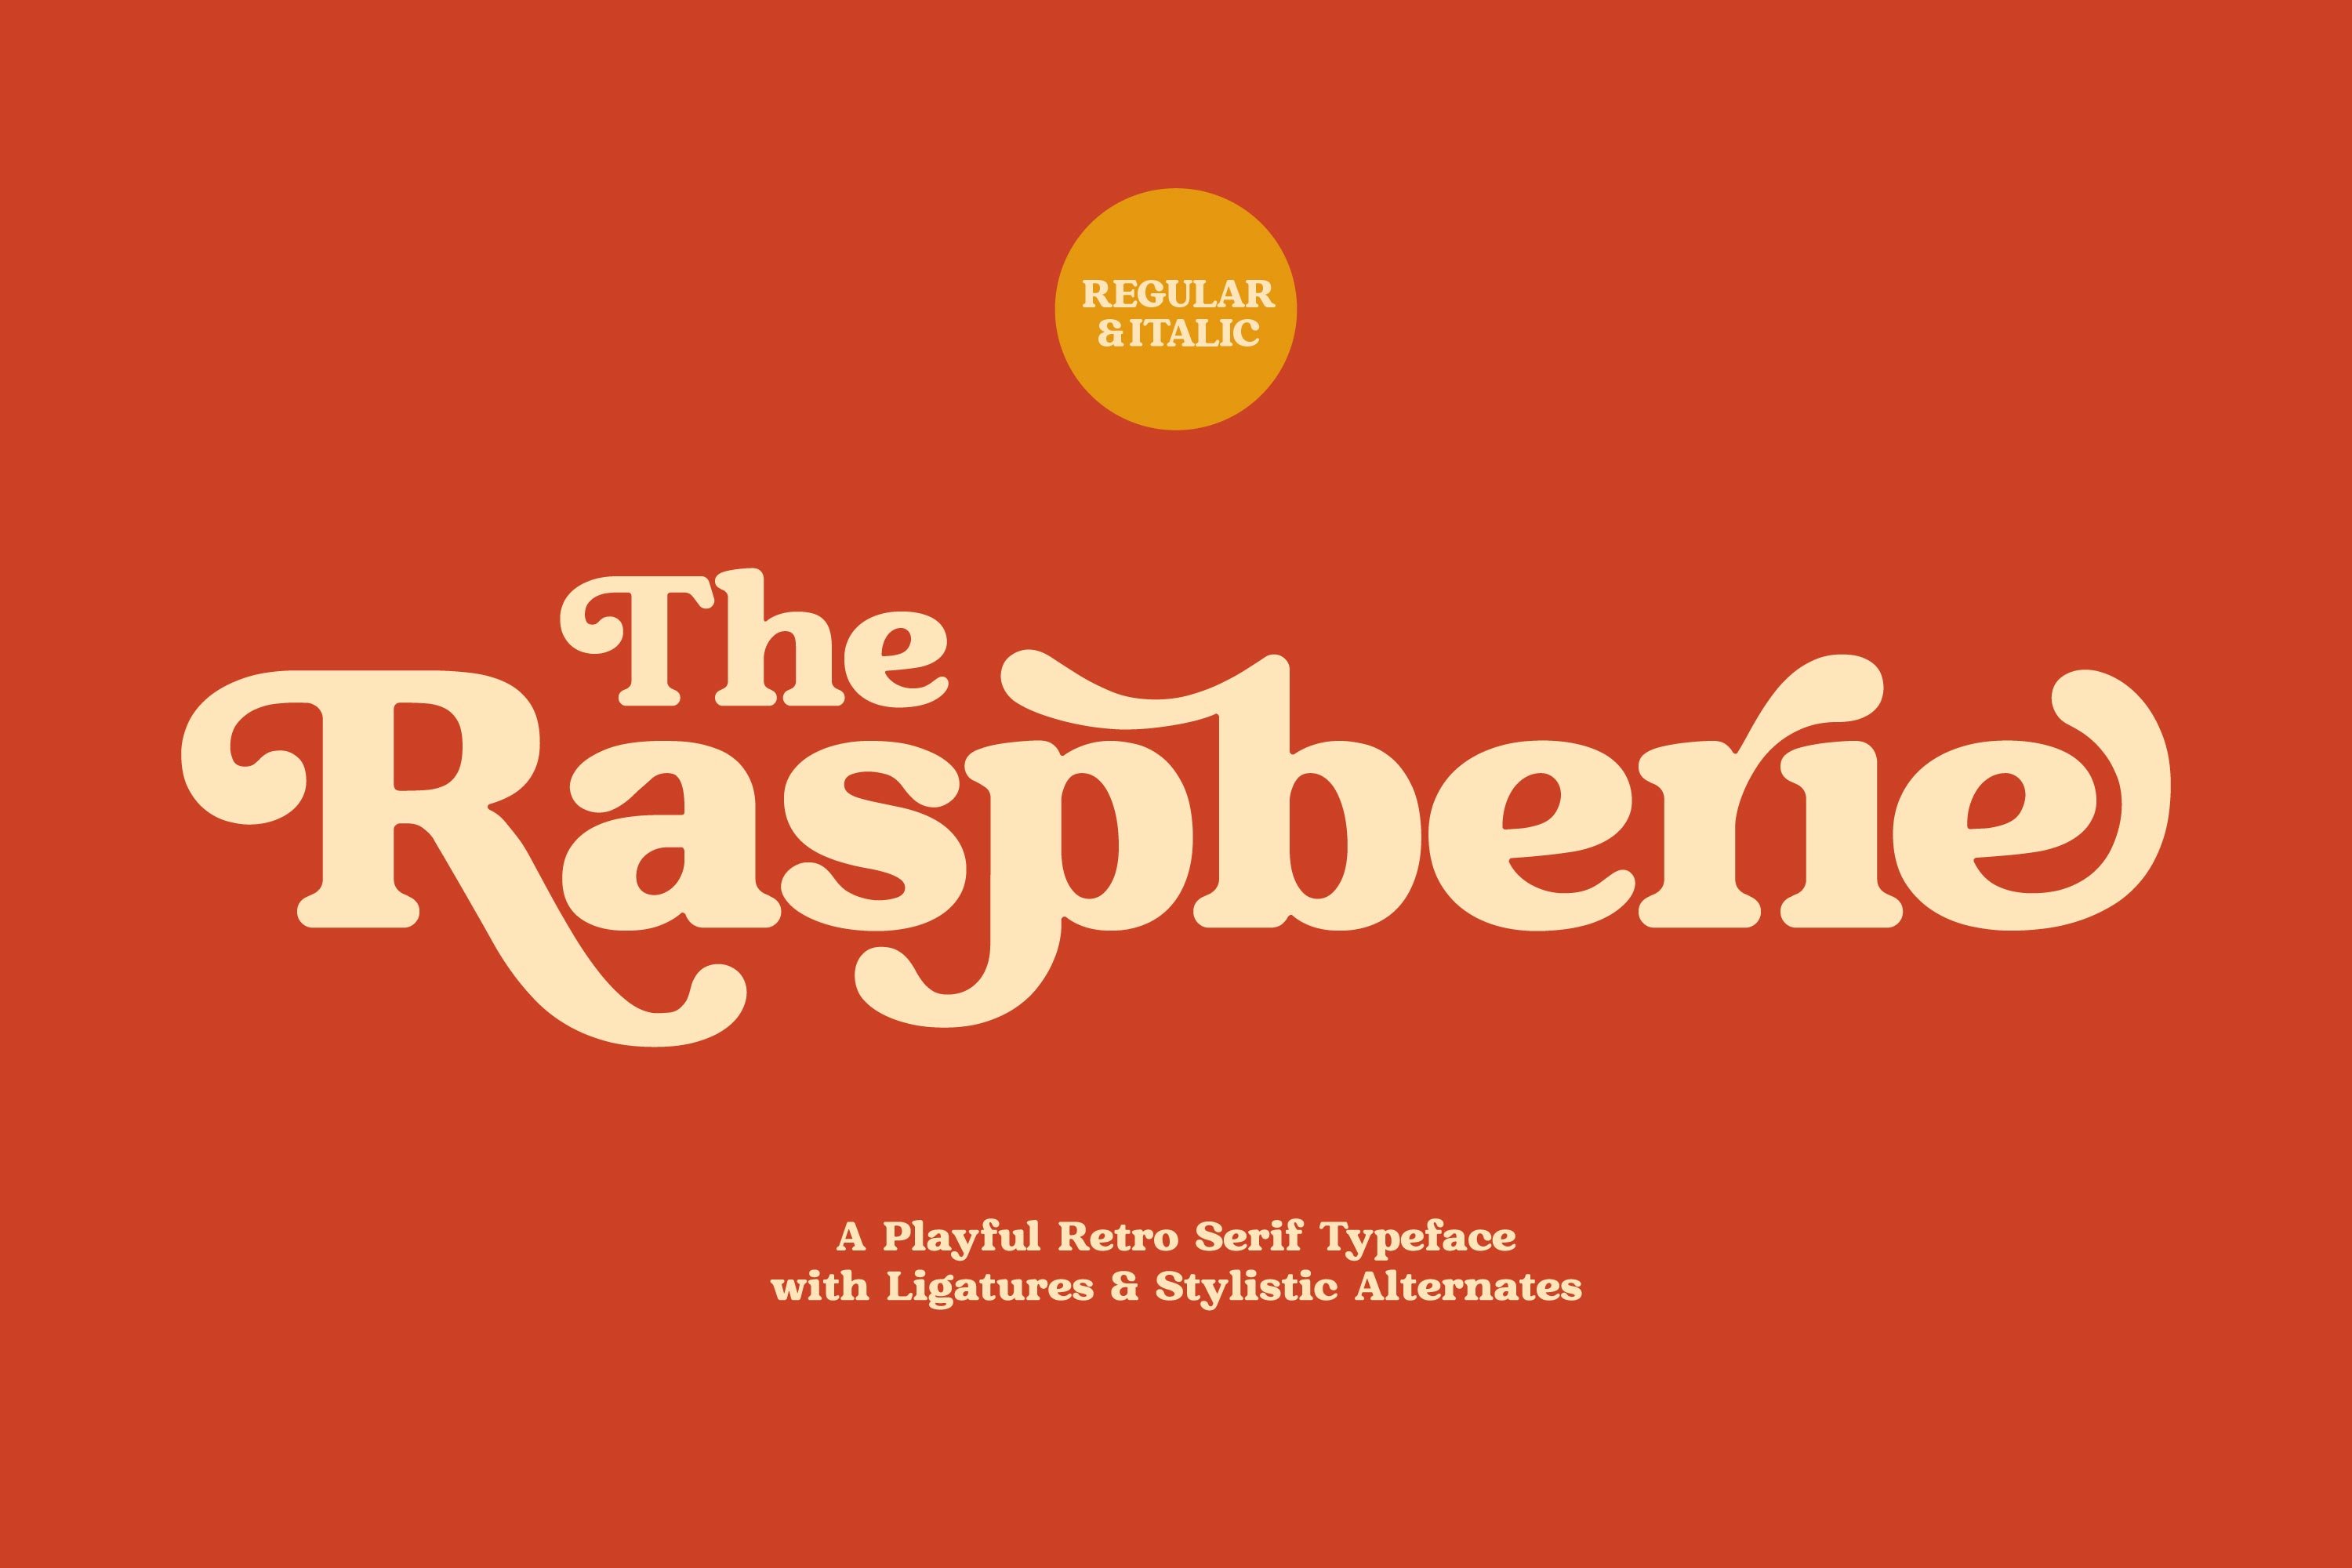 Raspberie - Retro Modern Font cover image.